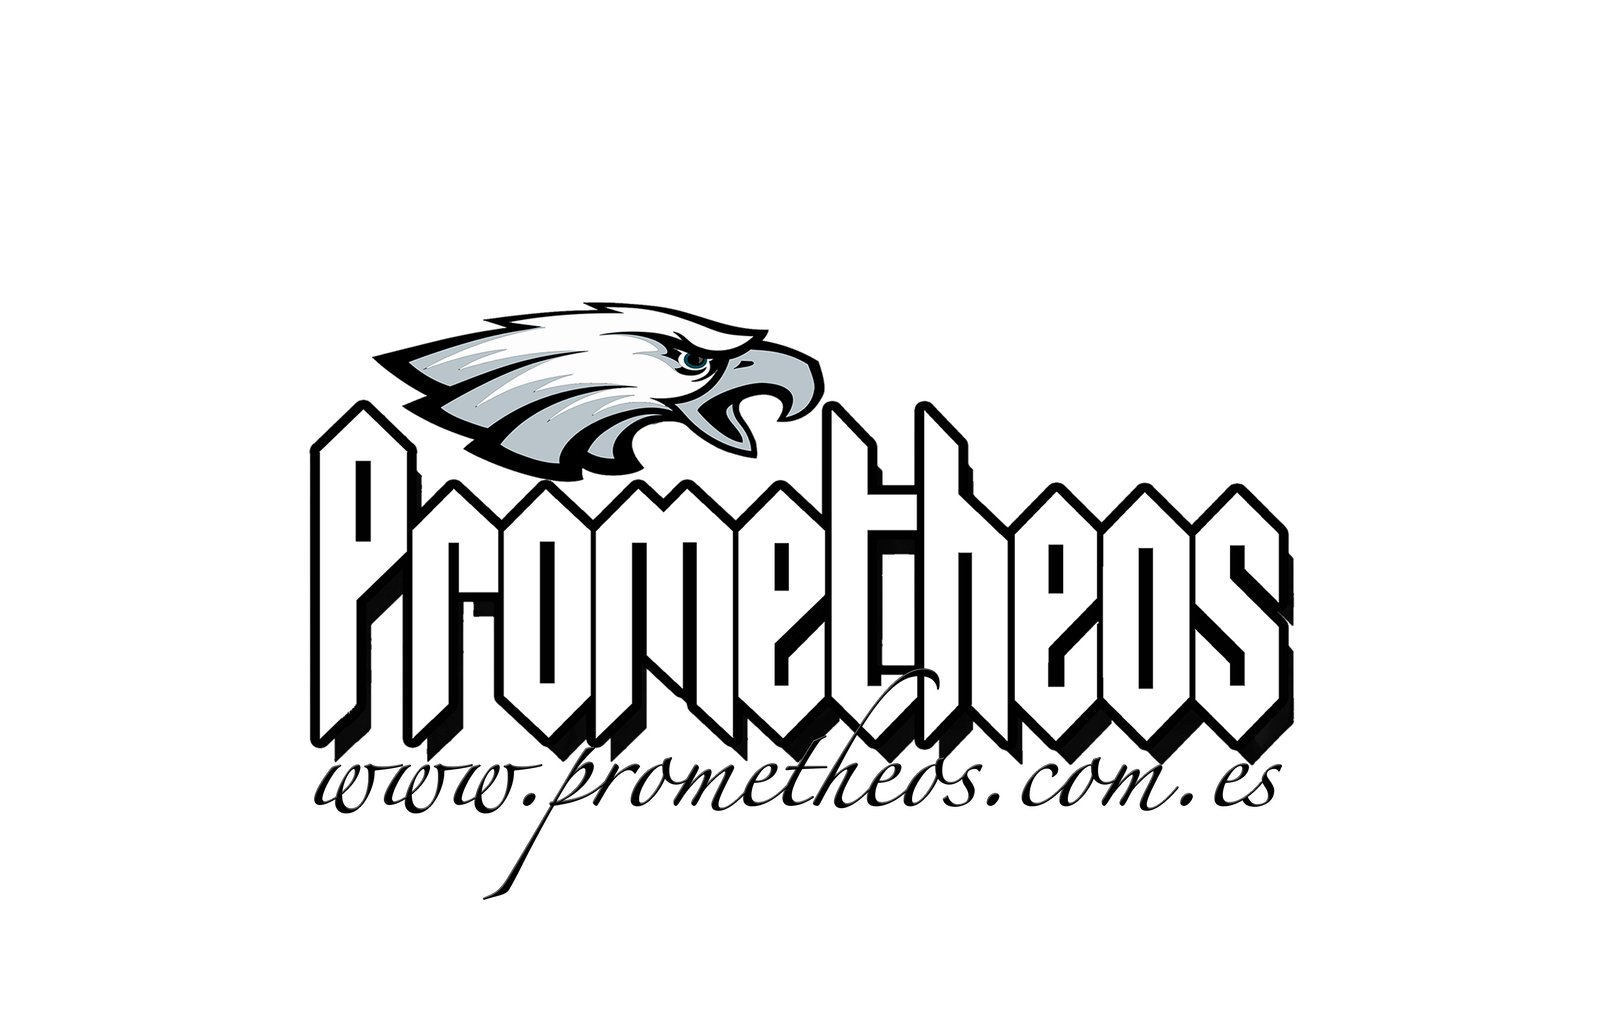 PROMETHEOS WebStore